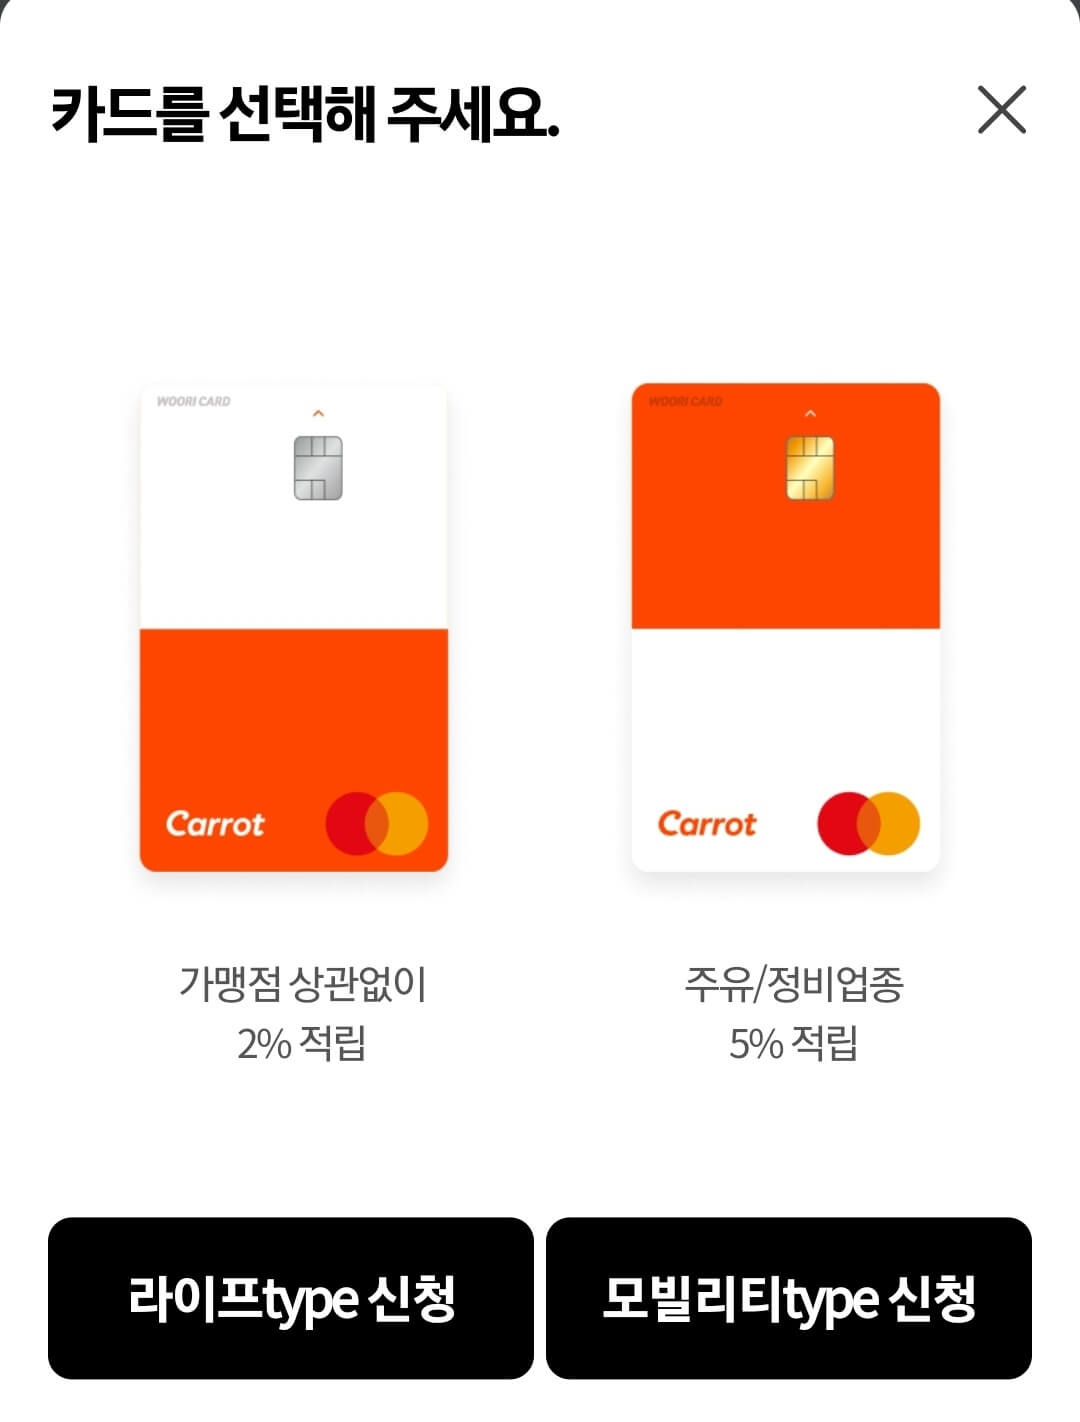 캐롯 멤버스 카드